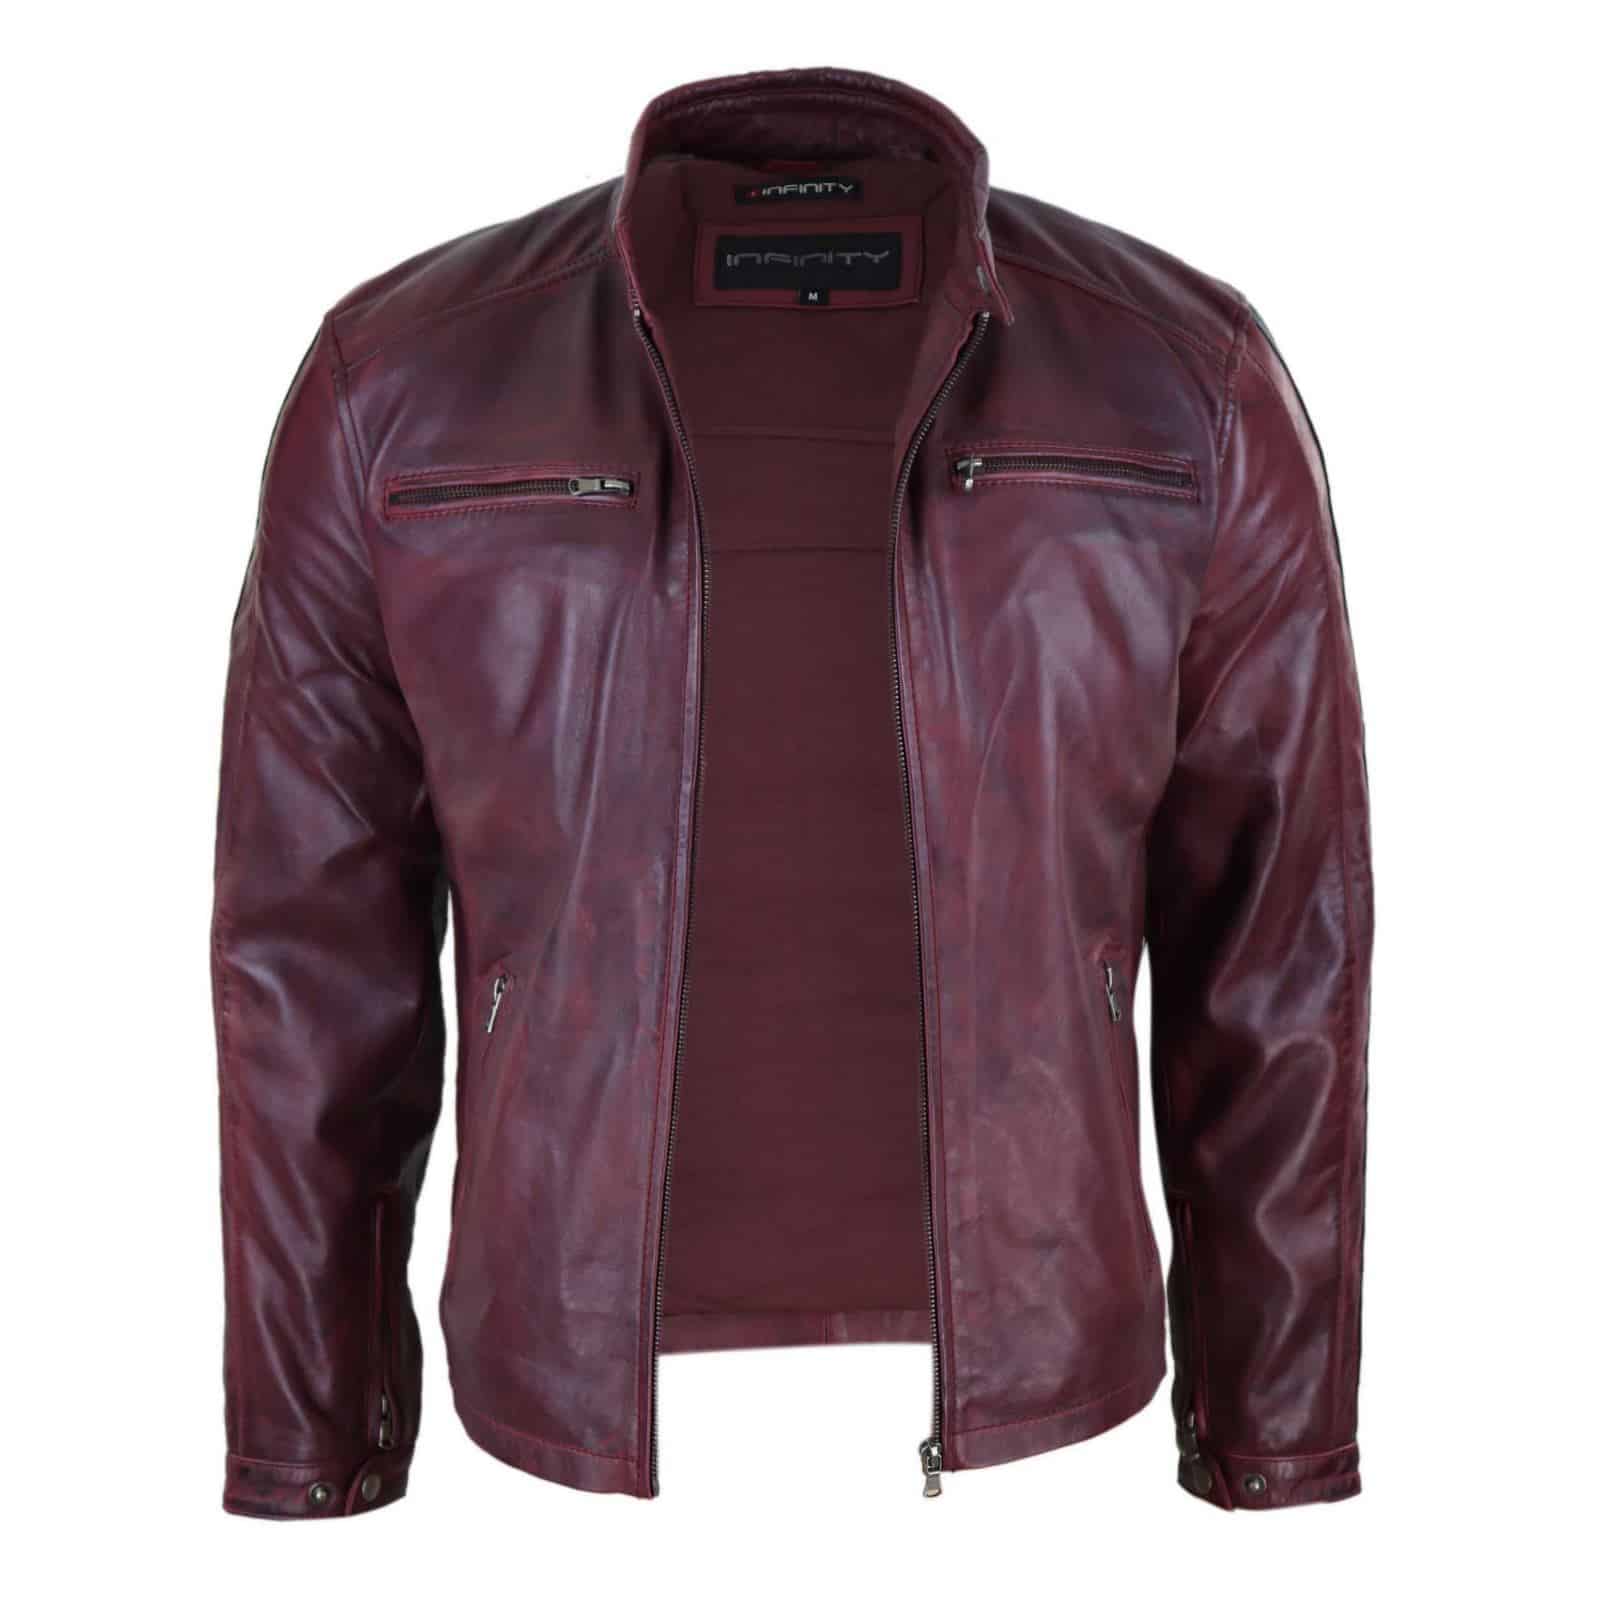 Genuine Real Leather Biker Jacket for Men - Wine Colour: Buy Online ...